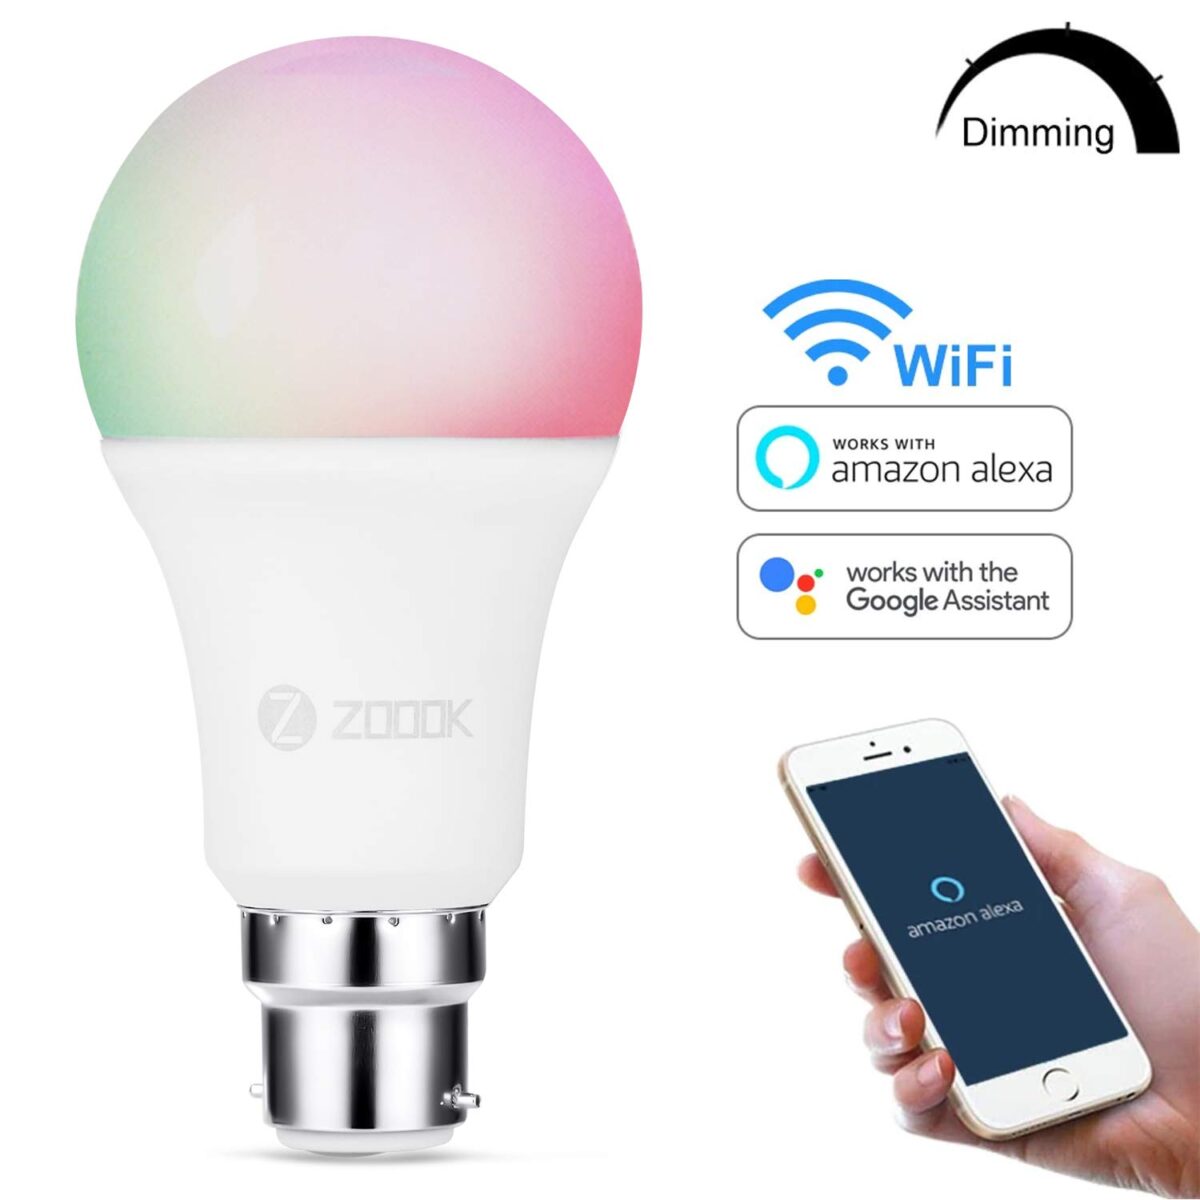 Zoook Shine 9-Watt B22 type Smart LED Bulb Compatible with Amazon Alexa